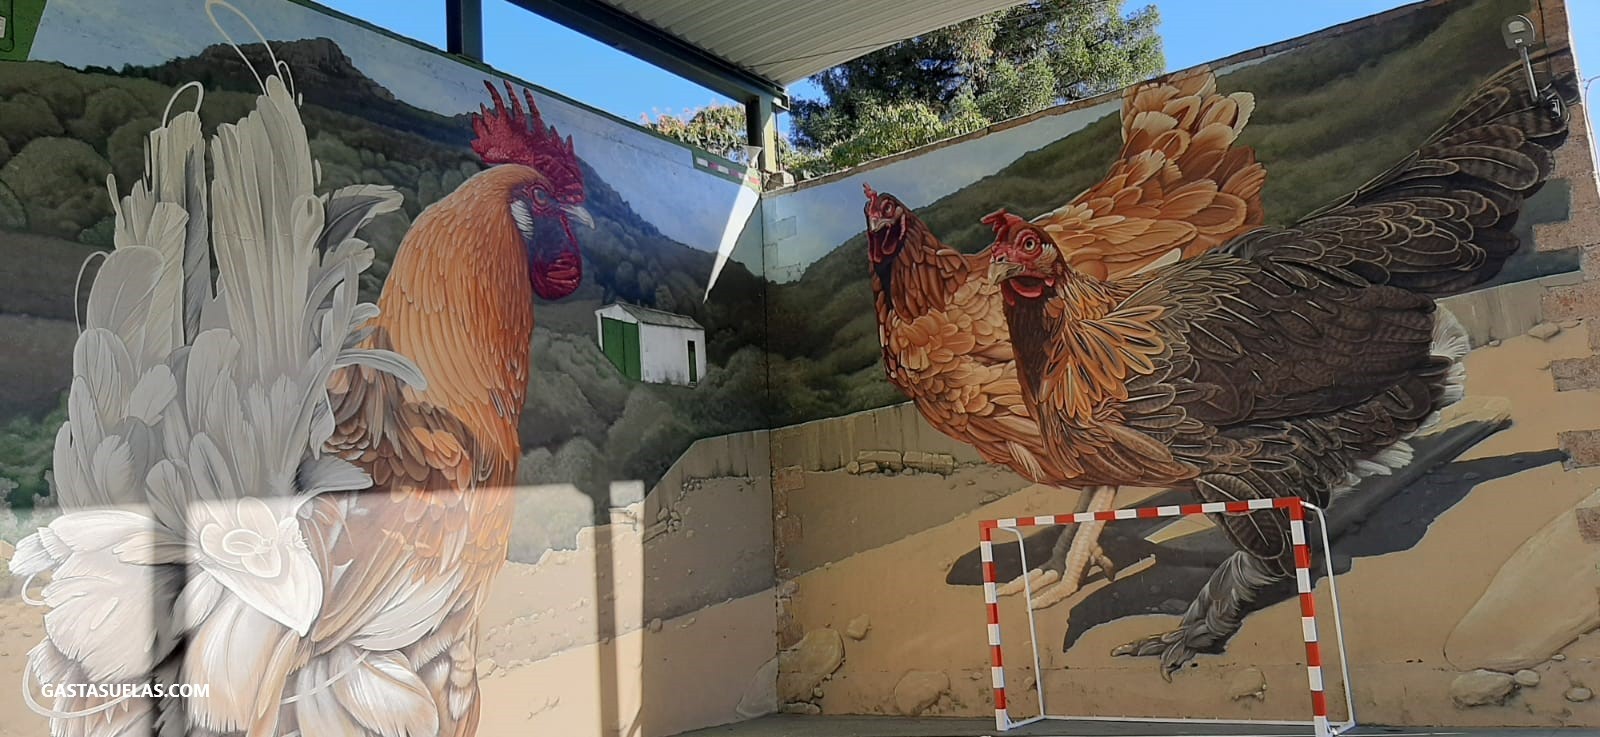 Mural de arte urbano "Gallo y Gallinas" en Garcibuey (Sierra de Francia, Salamanca) 